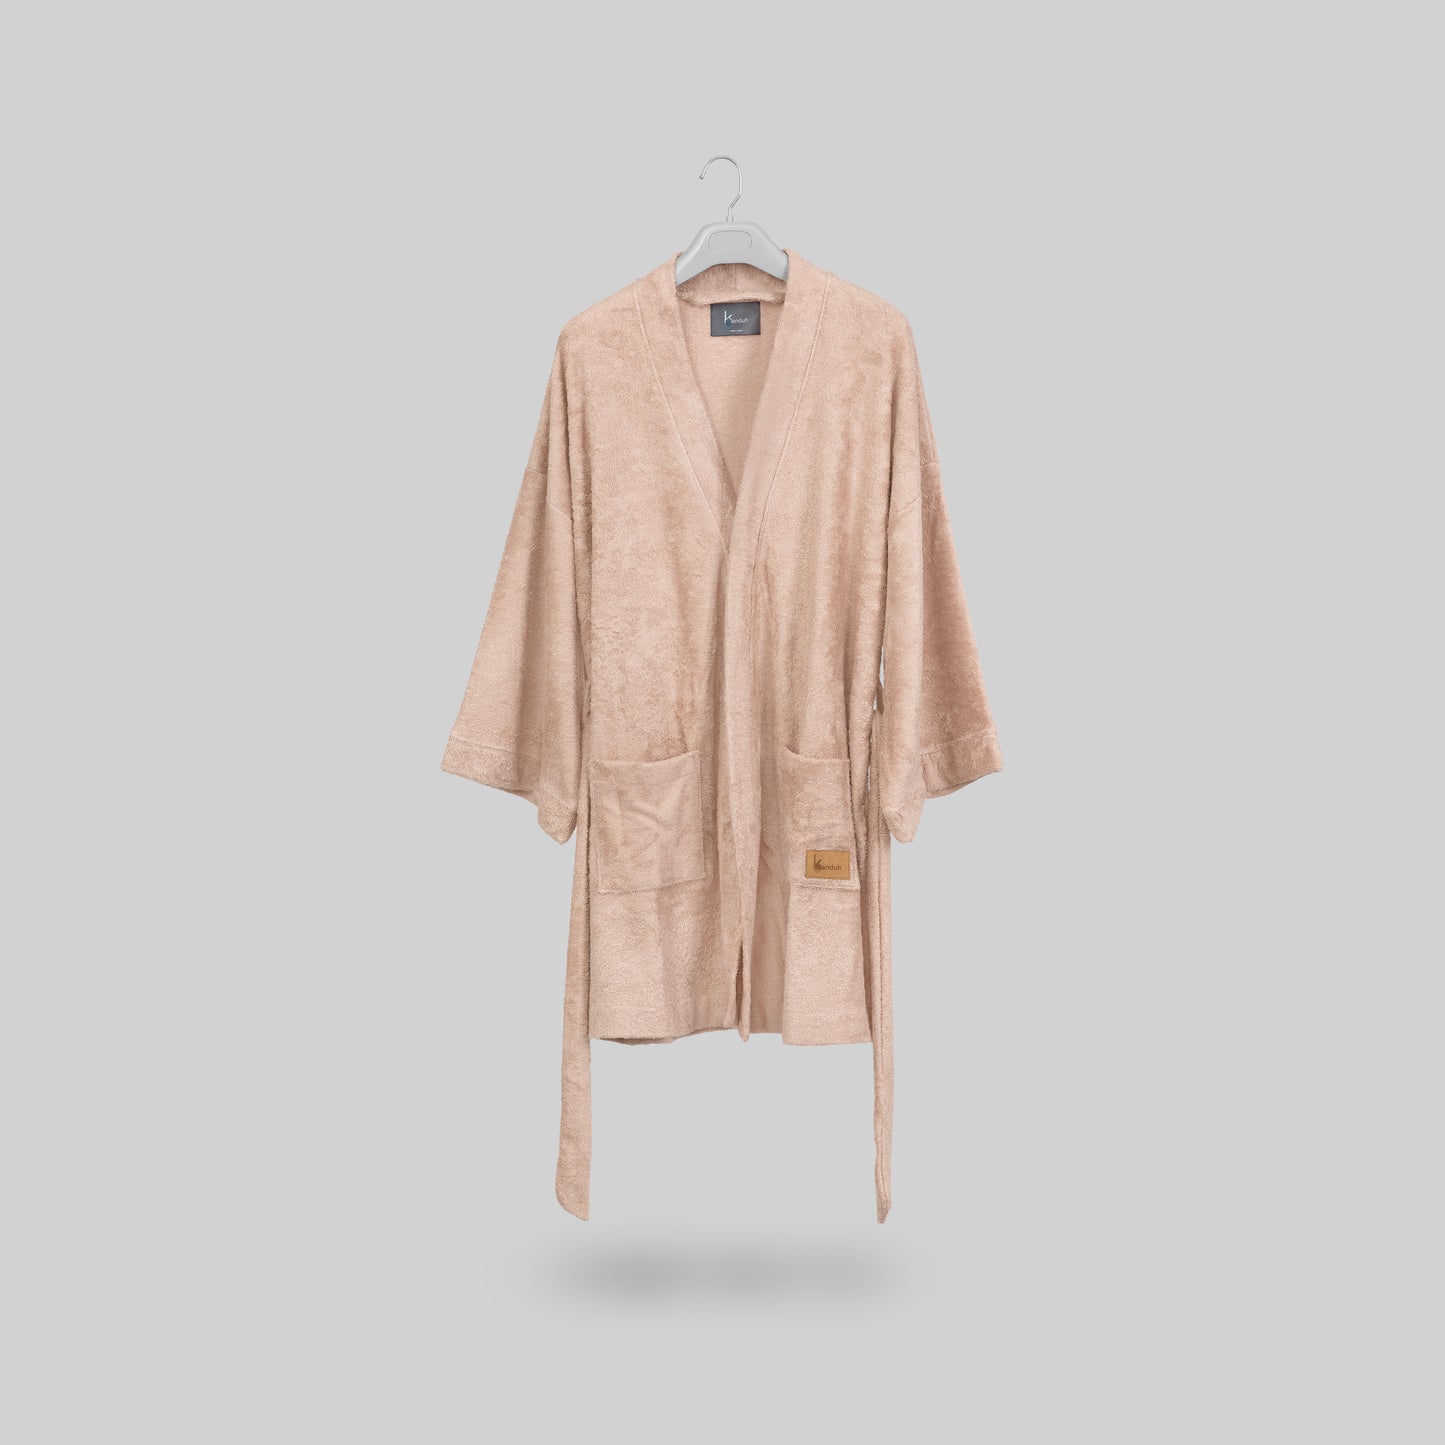 “Albornoz Sento” Albornoz corto tipo kimono en tejido de rizo de bambú, color nude